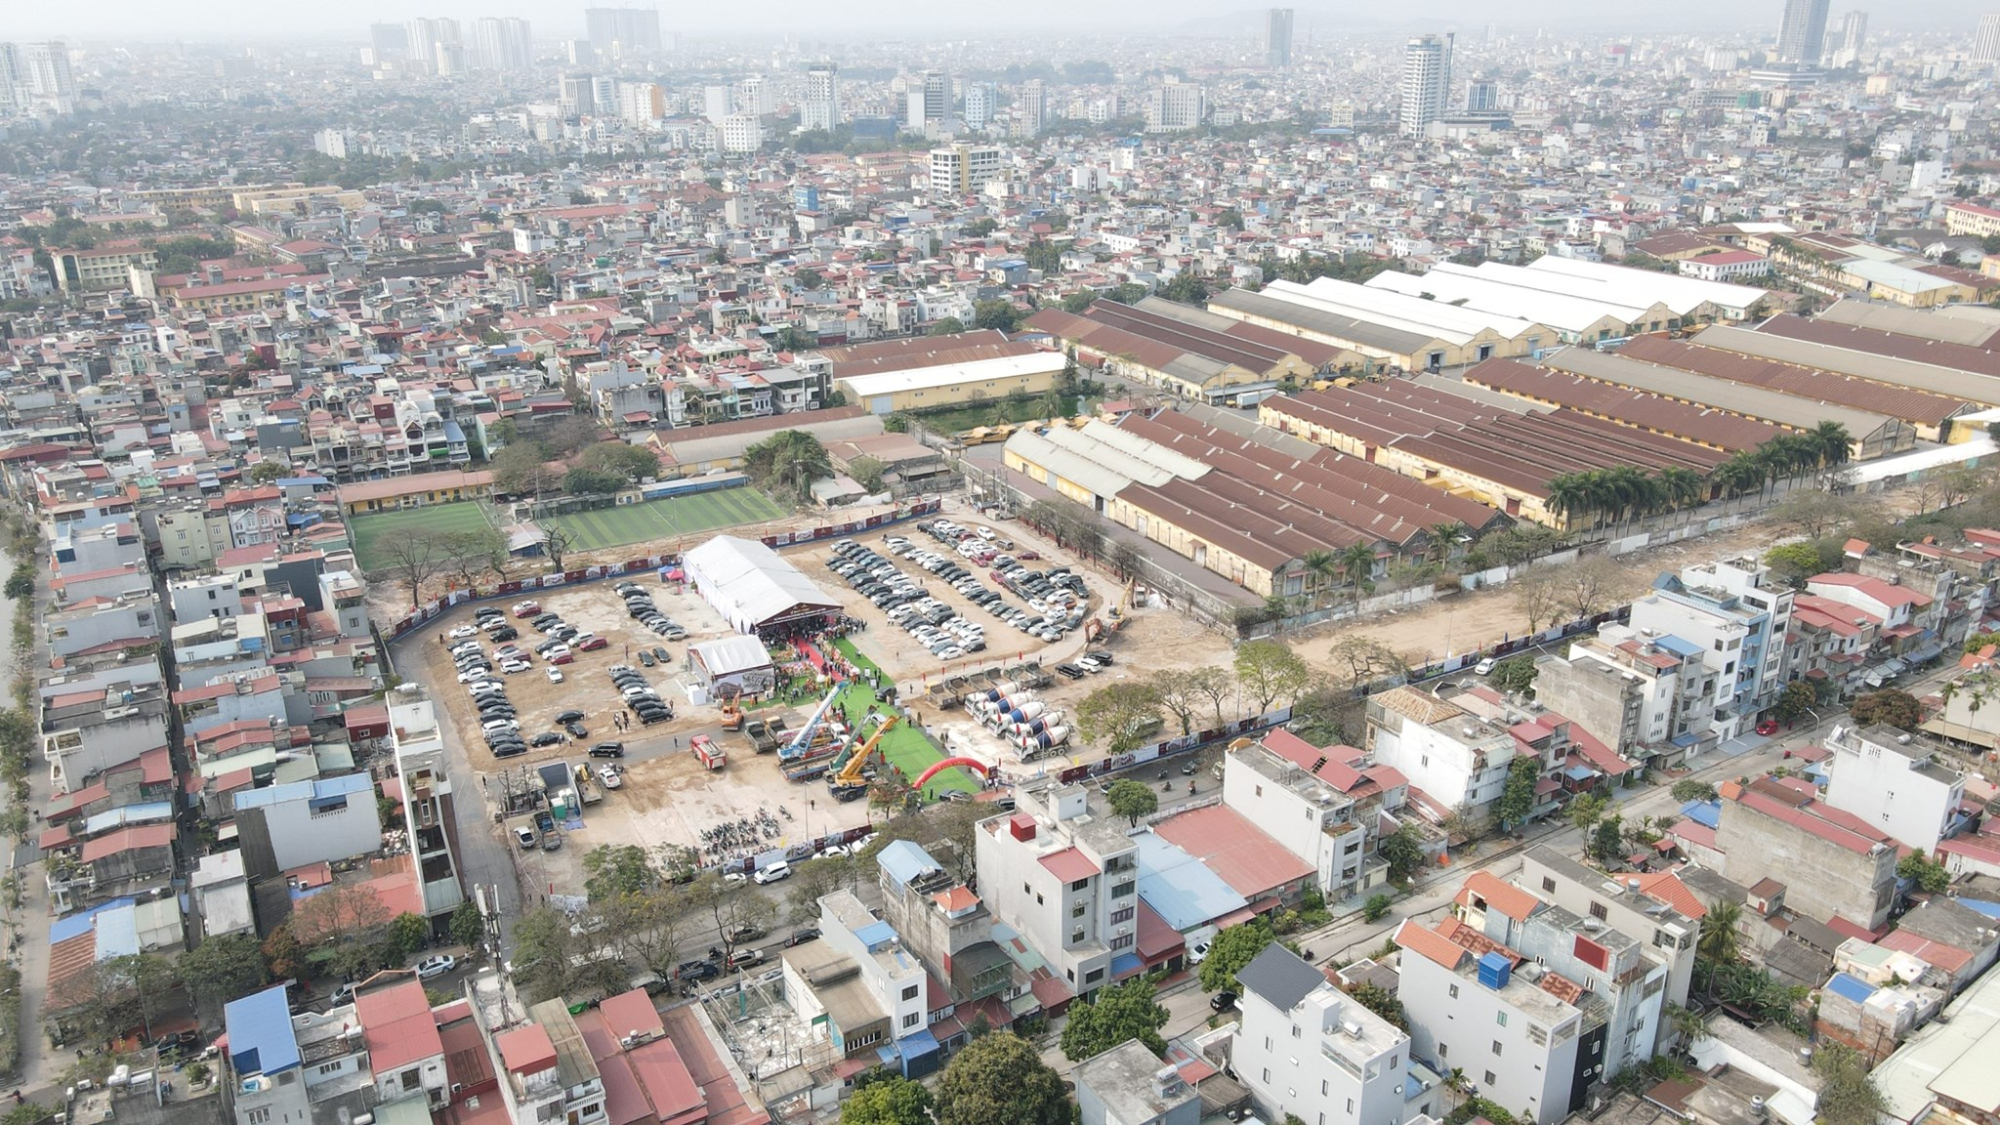 Từ ngày 24/8, quận Ngô Quyền (Hải Phòng) sẽ cưỡng chế thực hiện quyết định thu hồi đất phục vụ xây dựng Khu nhà ở xã hội tại Tổng kho 3 Lạc Viên tại số 142 Lê Lai

